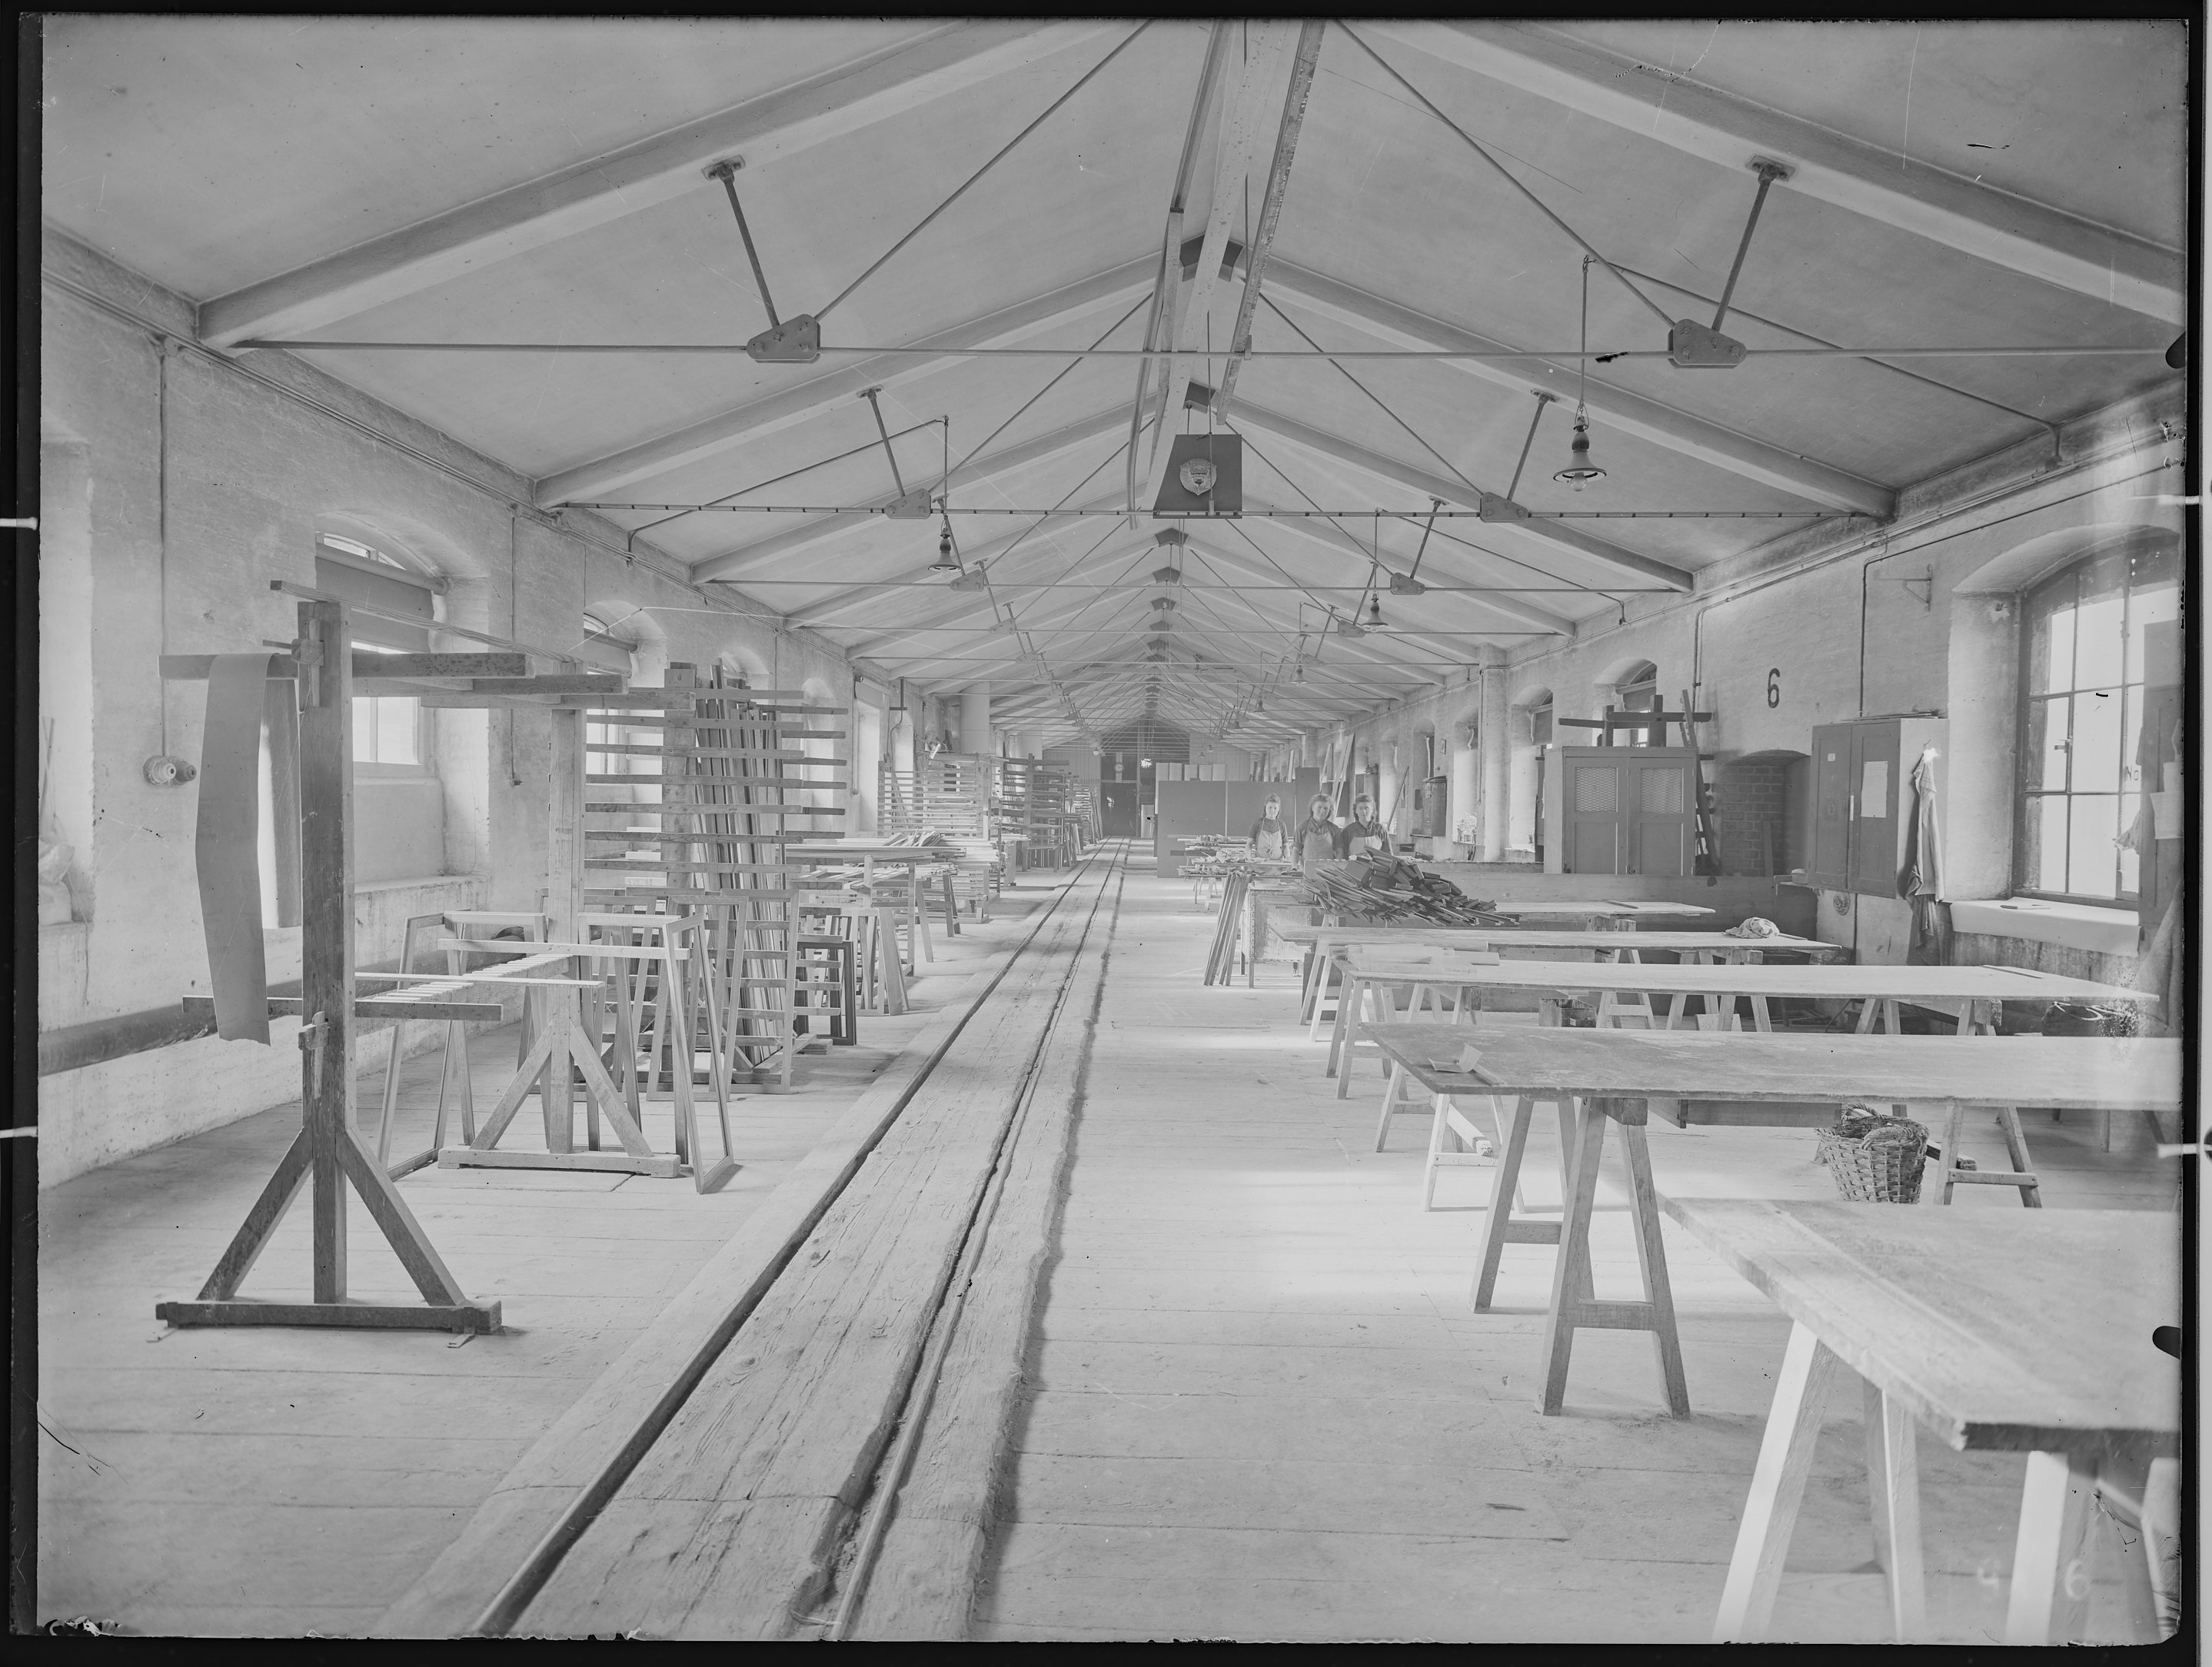 Fotografie: Waggon- und Maschinenbau AG Görlitz (Innenansicht), Werkhalle mit Arbeiterinnen, um 1930? (Verkehrsmuseum Dresden CC BY-NC-SA)